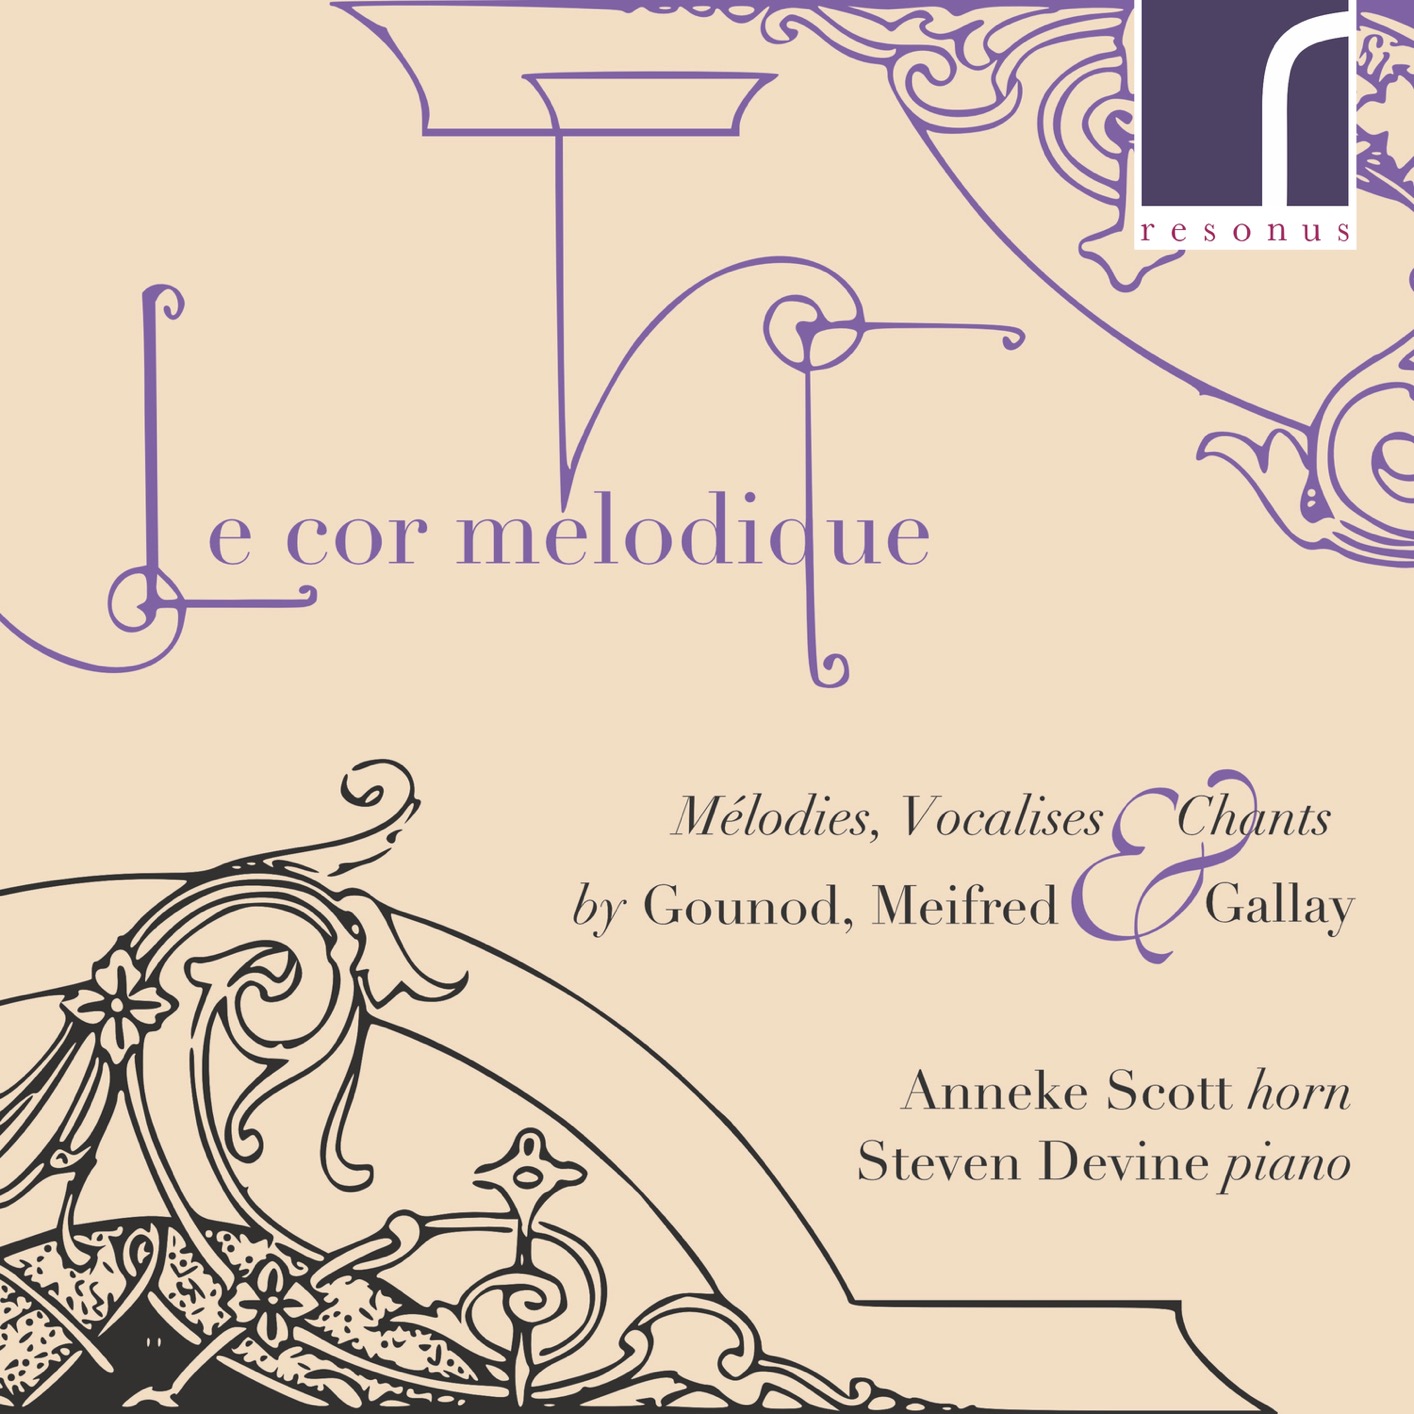 Anneke Scott & Steven Devine - Le Cor Melodique: Melodies, Vocalises & Chants by Gounod, Meifred & Gallay (2018) [FLAC 24bit/96kHz]